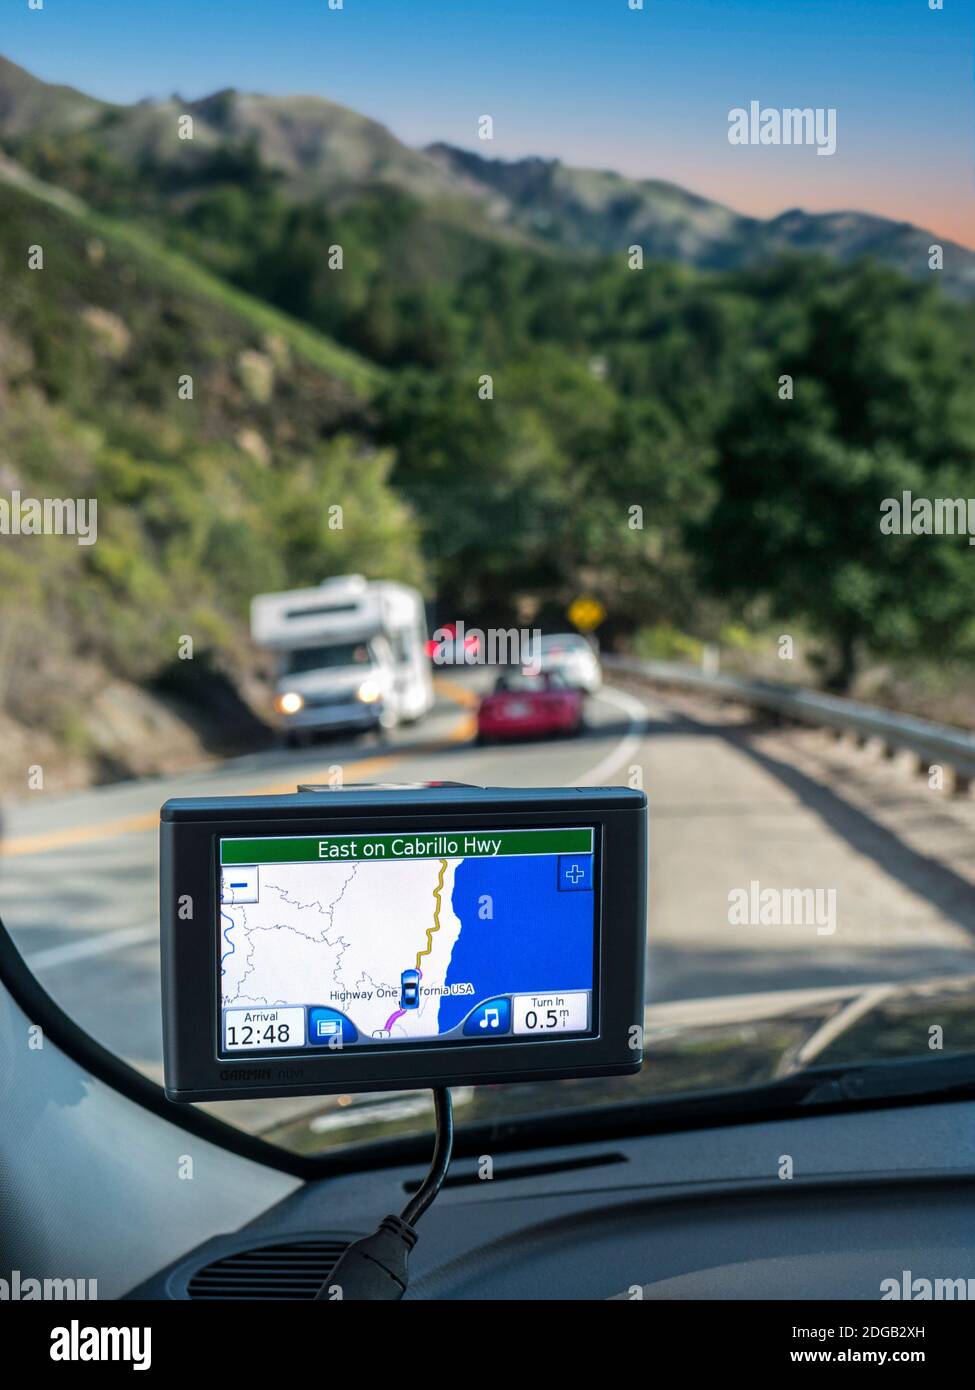 Navi California HIGHWAY ONE Satellitennavigationsbildschirm Nav Nav Anzeige Highway 1 One, East auf Cabrillo Highway mit Autos und Wohnmobil RV auf Urlaub Tour Fahrt auf beliebten Küsten Pazifik Route. Monterey, Pazifischer Ozean, Kalifornien, USA Stockfoto